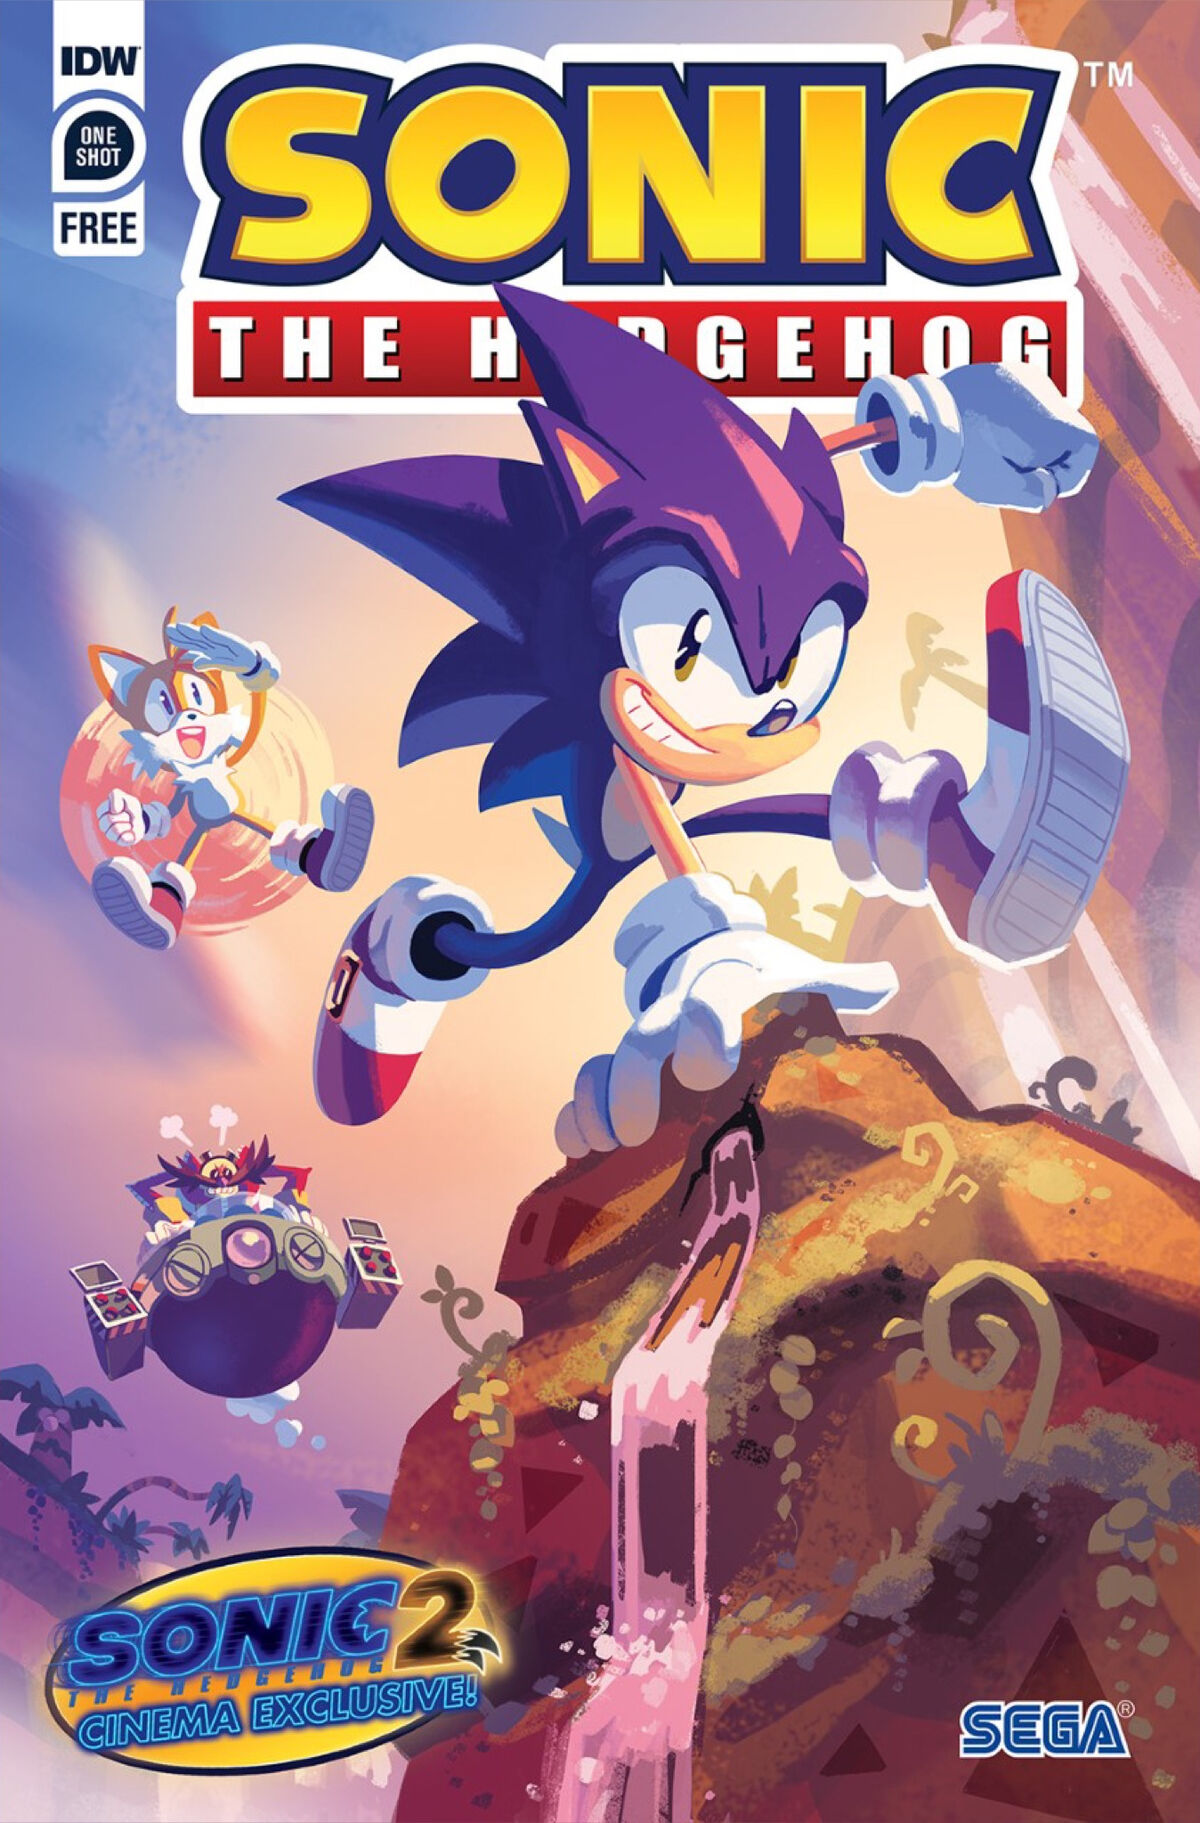 Editora IDW revela capa de nova série em quadrinhos de Sonic!